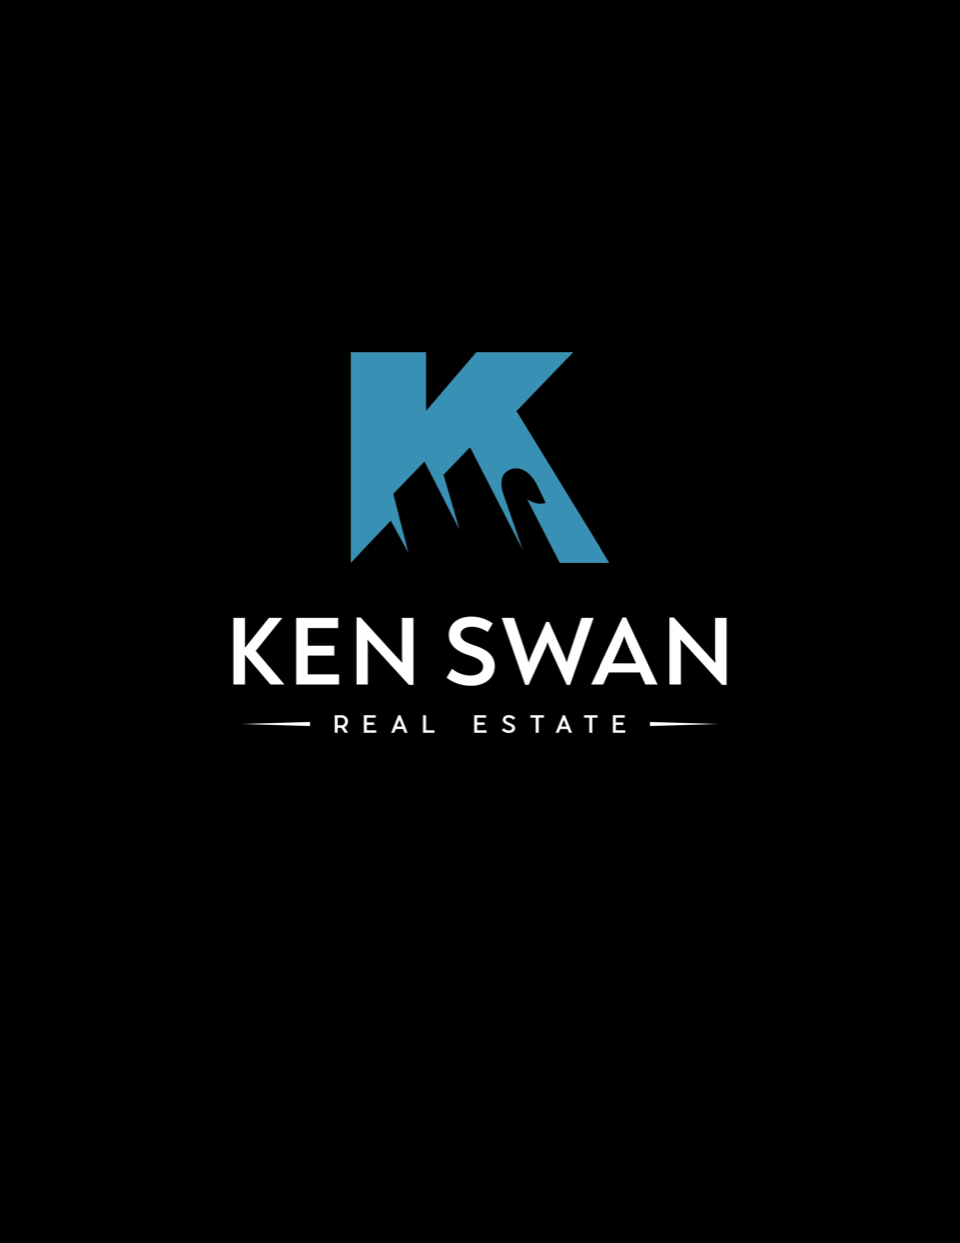 Ken Swan 